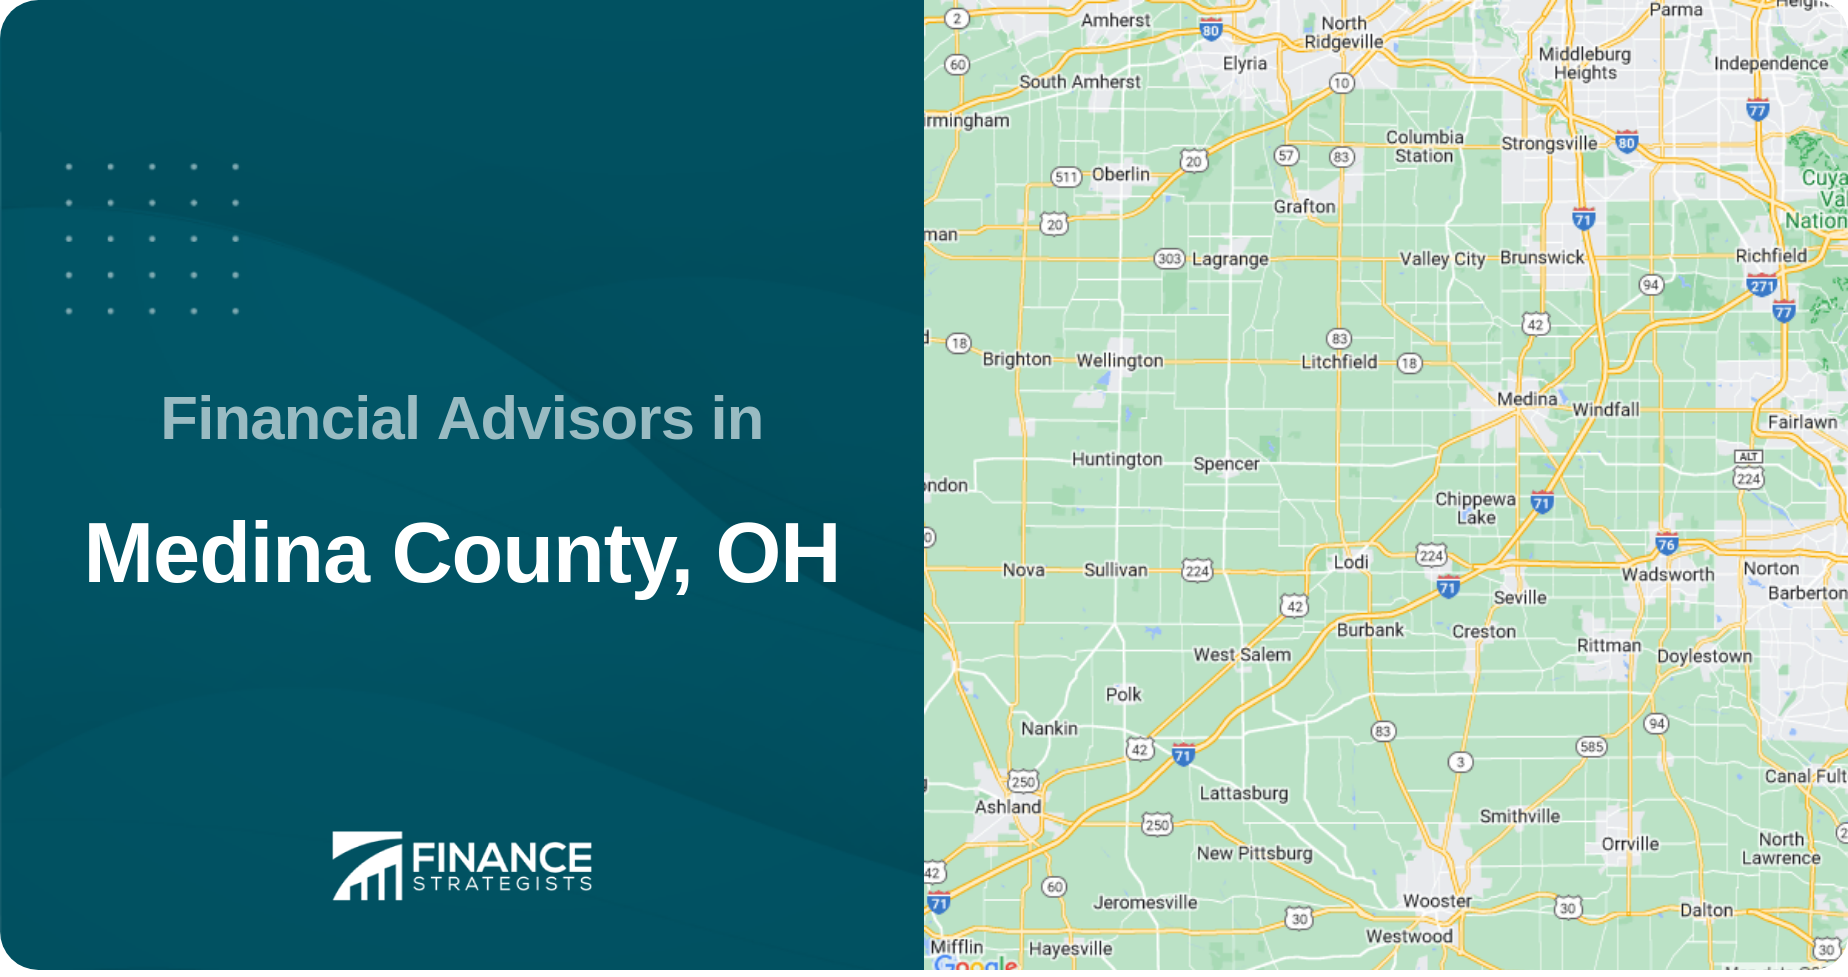 Financial Advisors in Medina County, OH